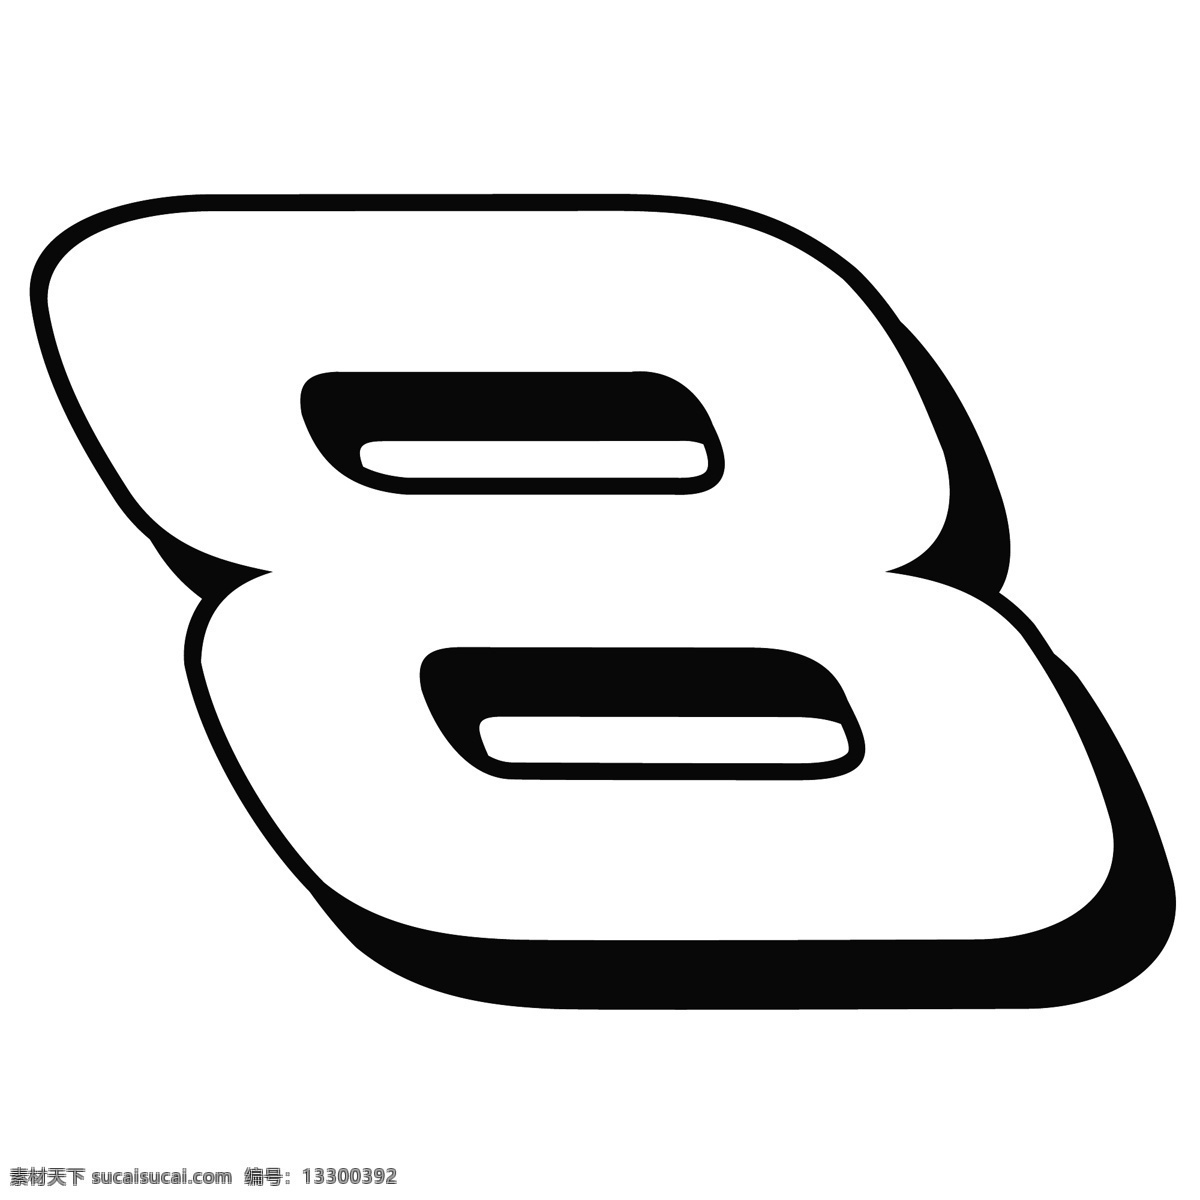 8deiearnhardt logo 设计欣赏 体育赛事 标志 标志设计 欣赏 矢量下载 网页矢量 商业矢量 logo大全 红色